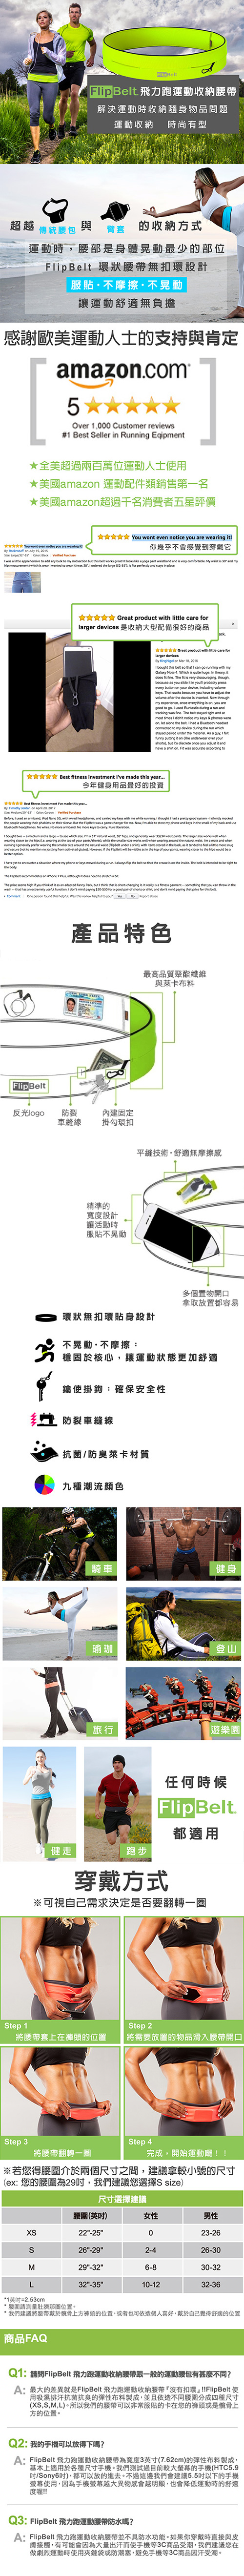 FlipBelt 飛力跑運動收納腰帶 經典款 螢光黃 (S)